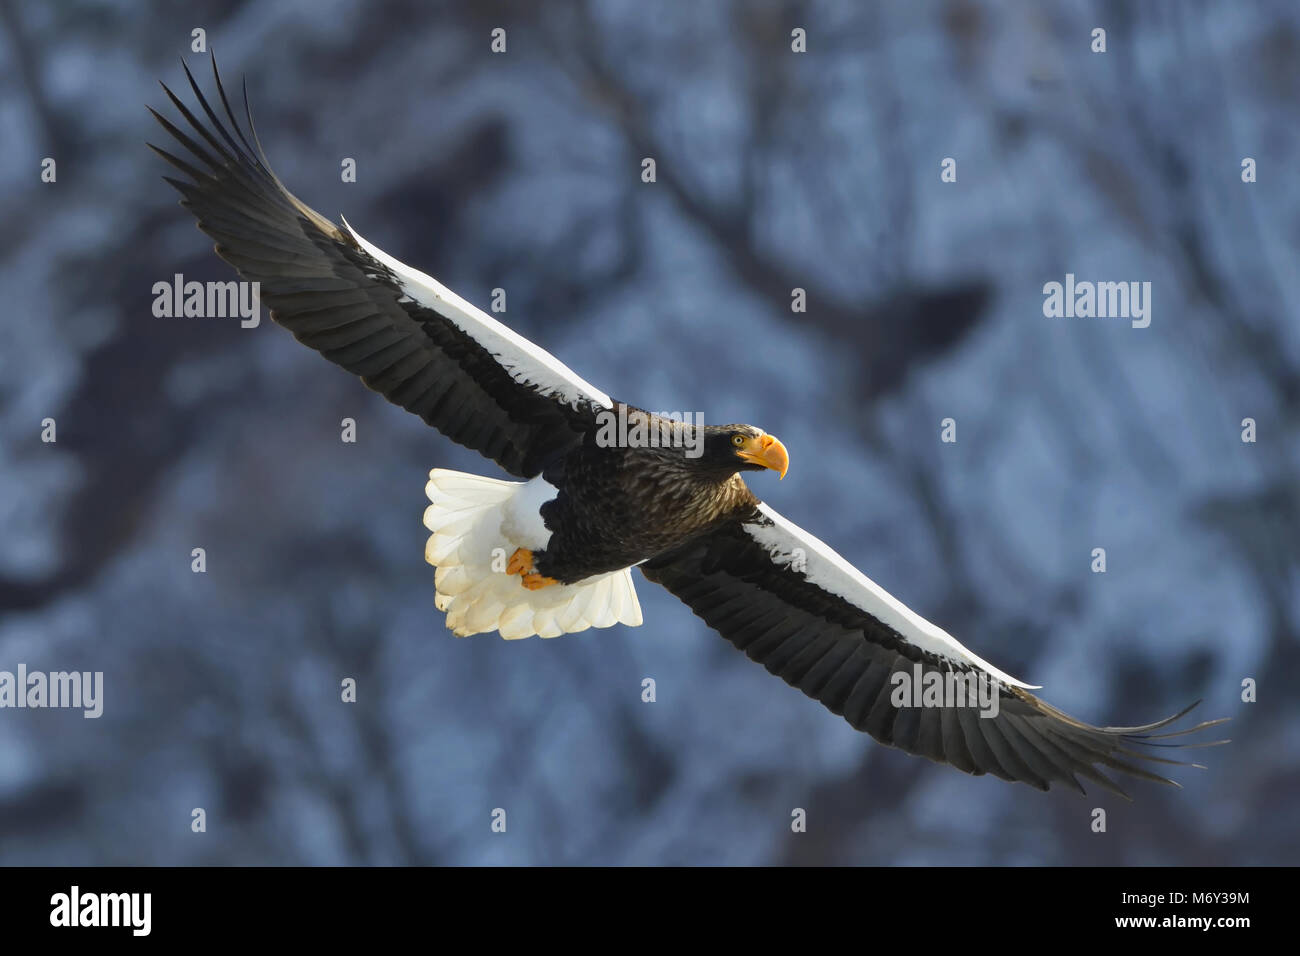 Steller's sea eagle in flight. Adult Steller's sea eagle (Haliaeetus pelagicus). Stock Photo